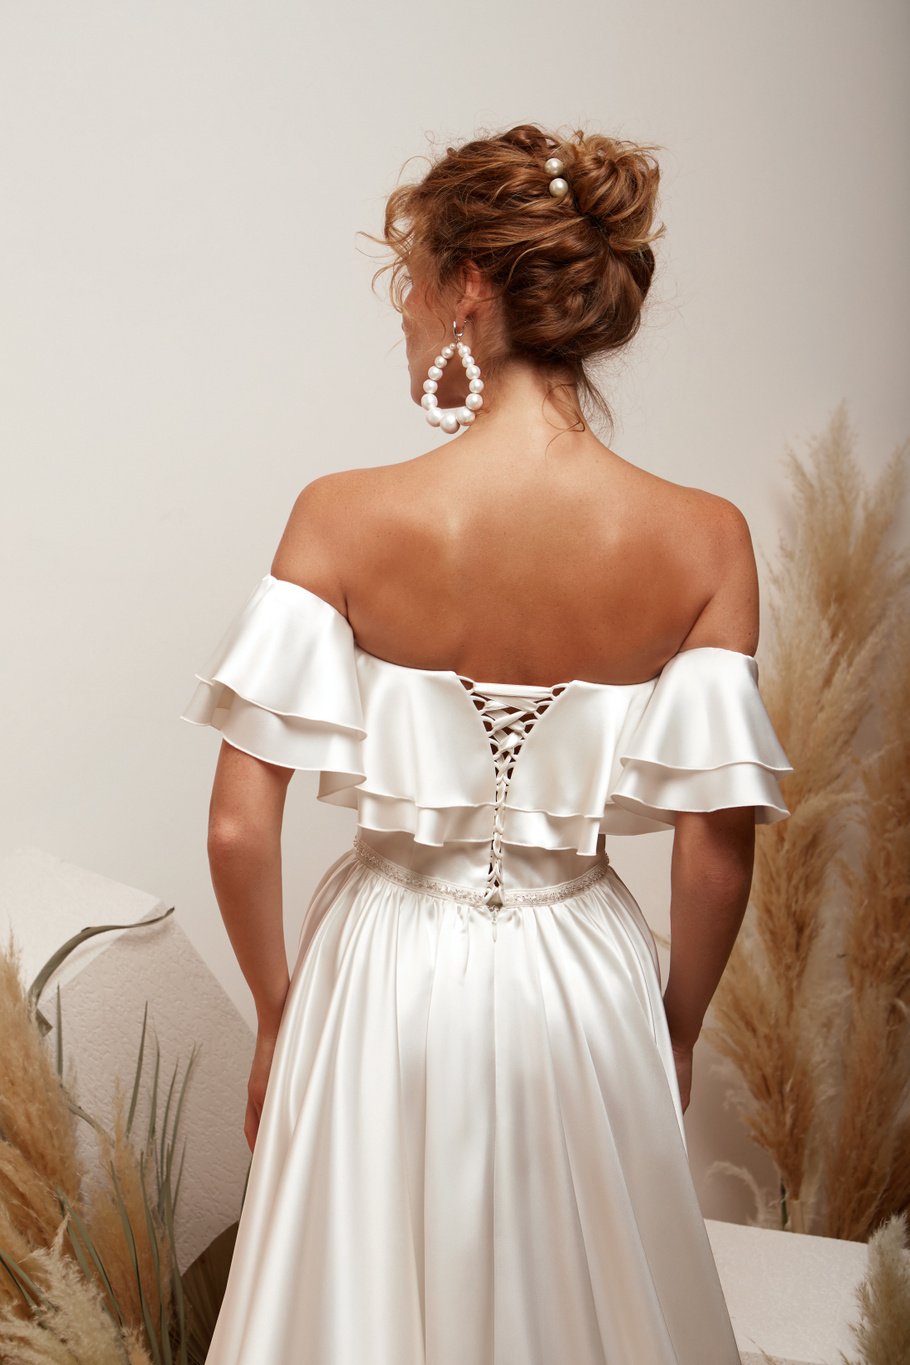 Купить свадебное платье «Магнолия» Мэрри Марк из коллекции 2020 года в Краснодаре